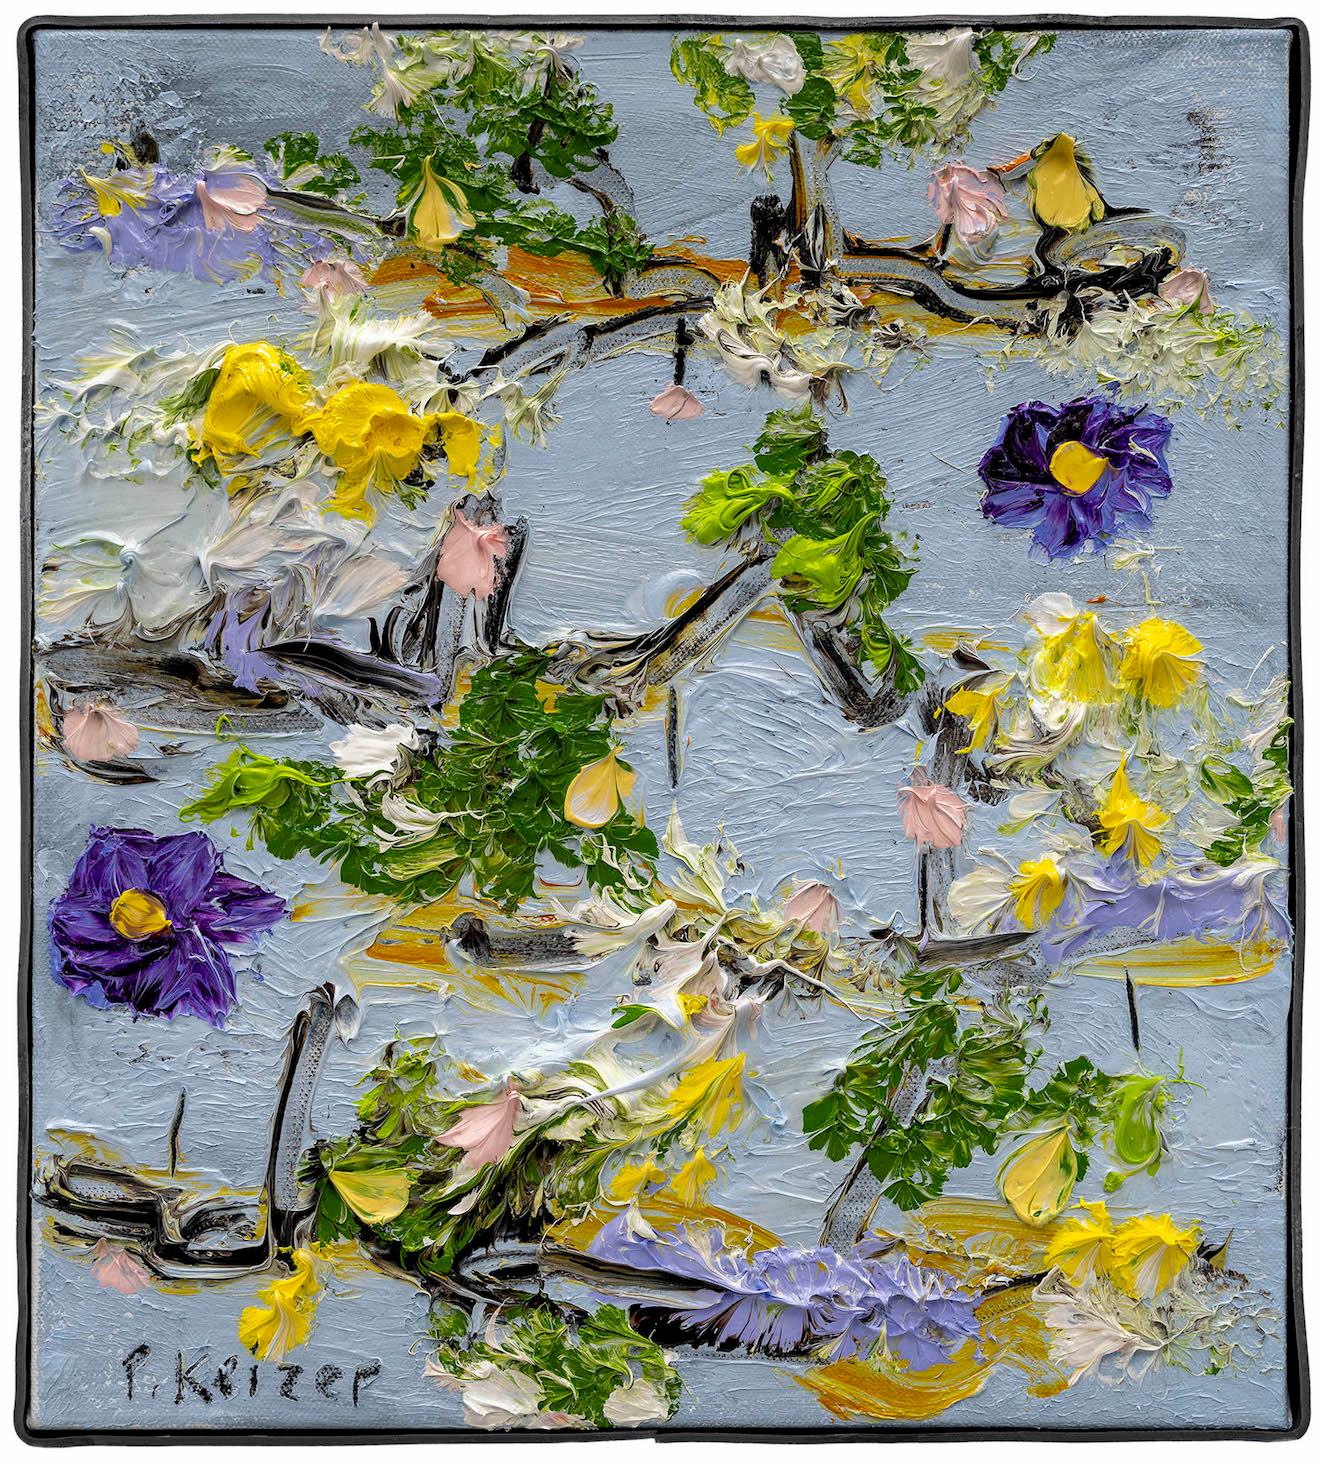 À la fois magnifique et absurde, l'œuvre de Peter Keizer évoque un monde où seuls les sentiments positifs surgissent : plein de fleurs, d'arbres, de paysages montagneux..  et les chiens. Ses thèmes sont étroitement liés aux souvenirs d'enfance ;